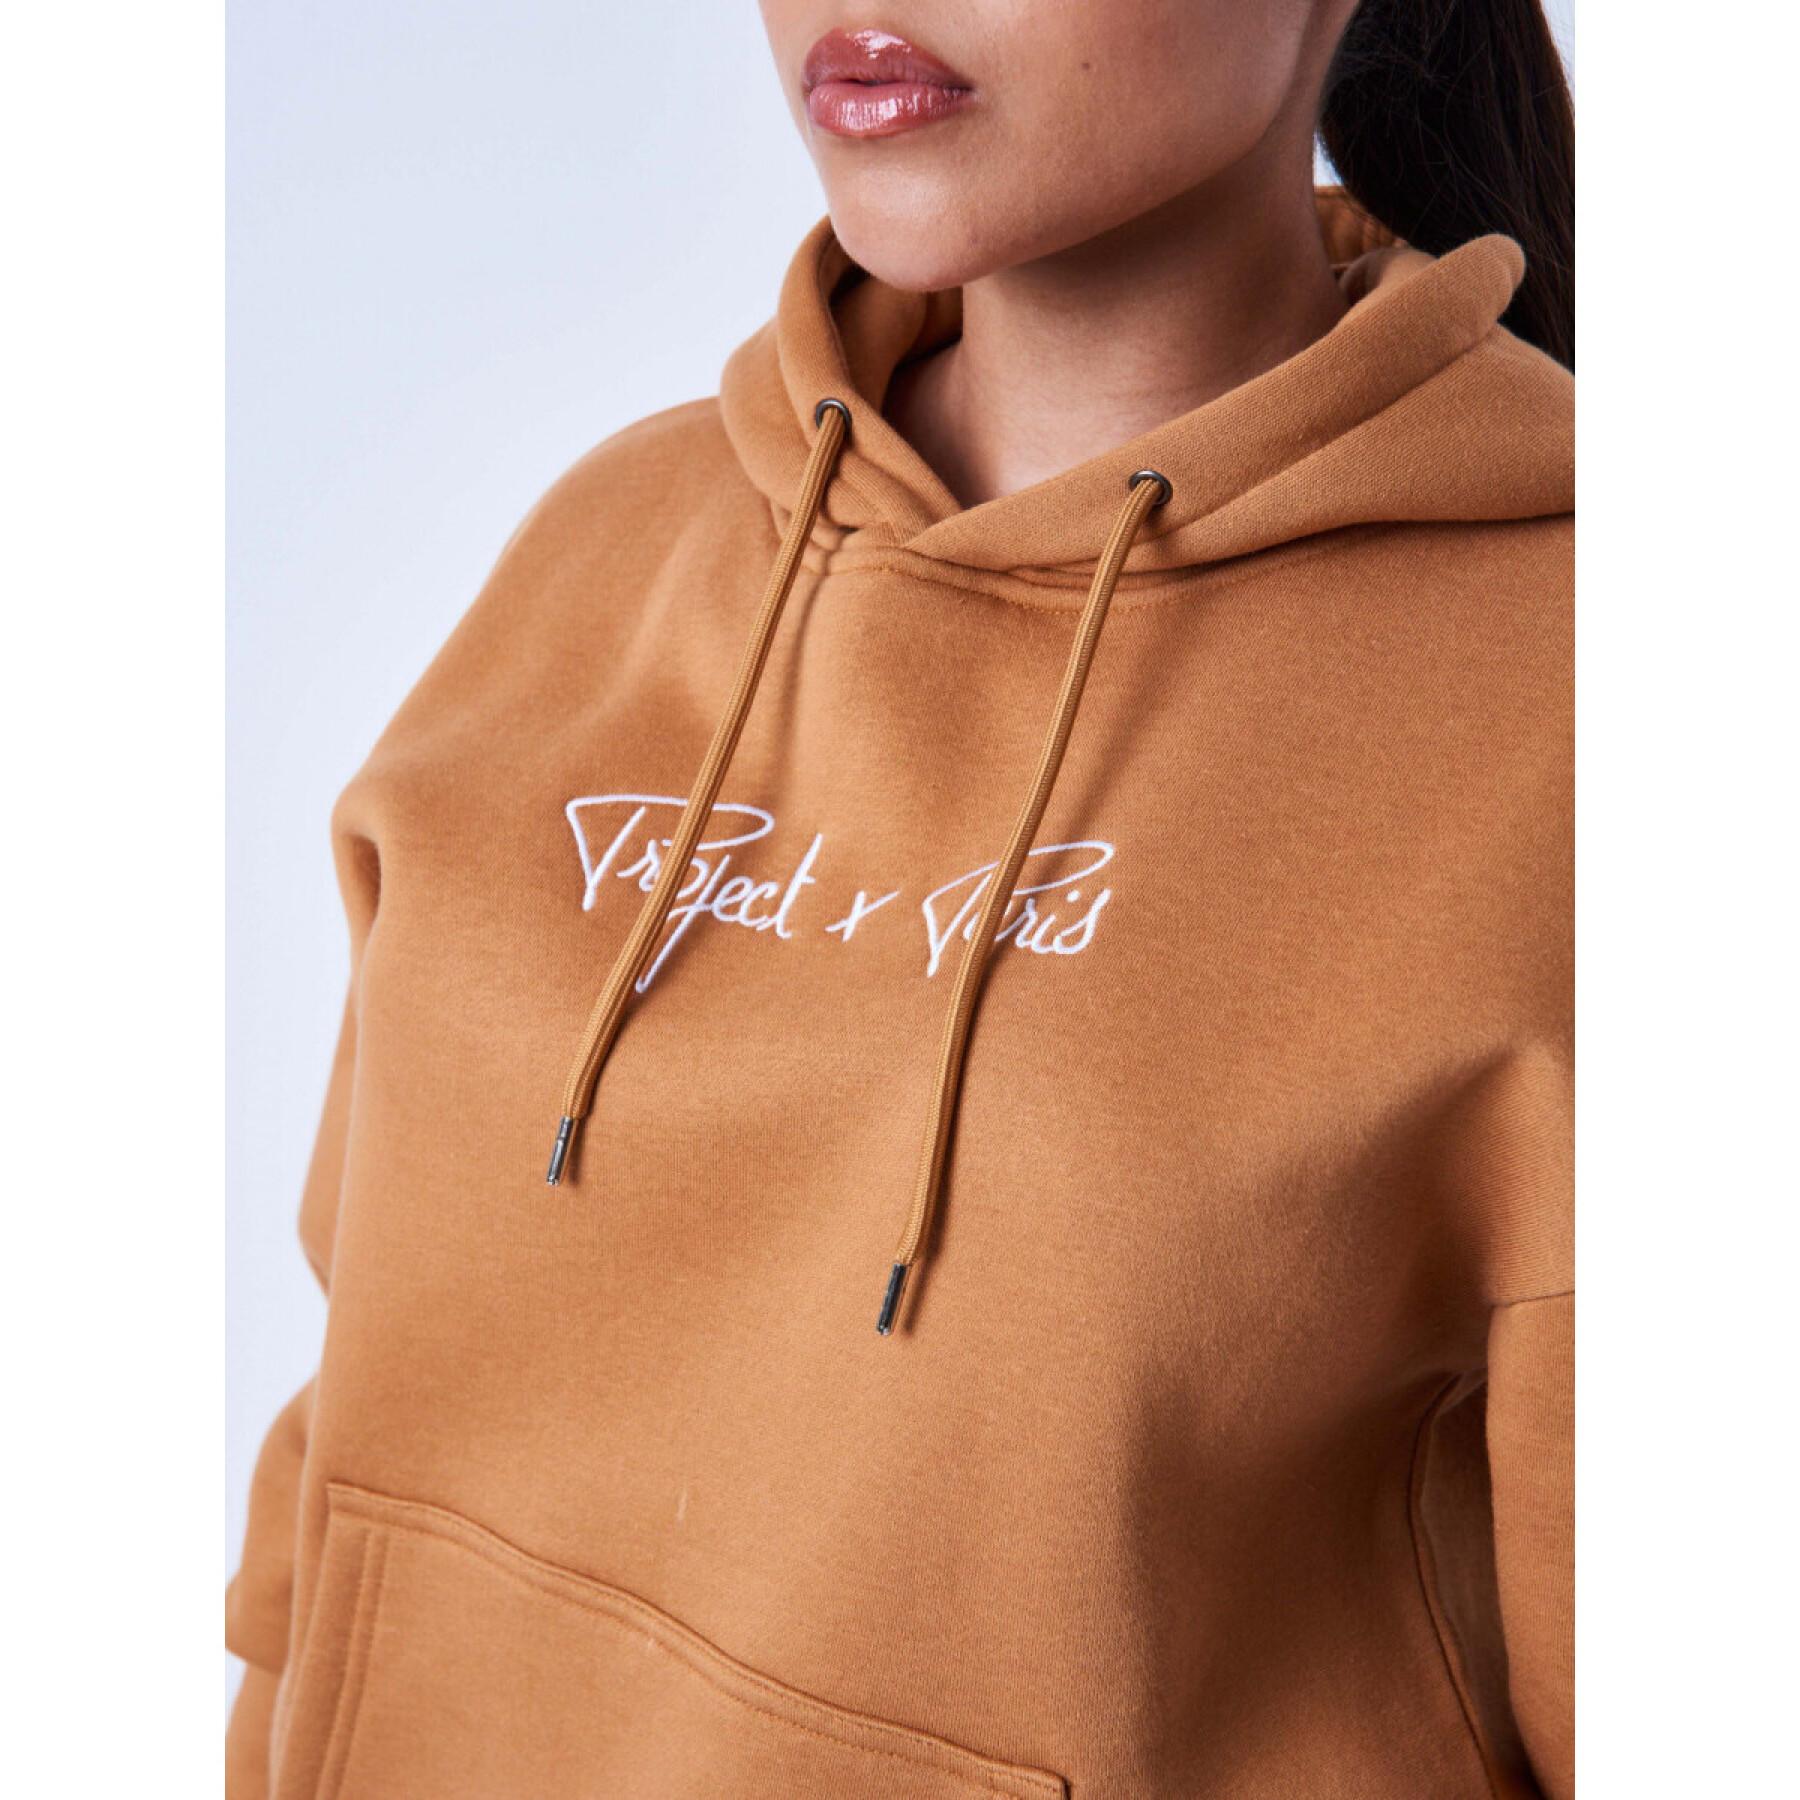 Sweatshirt women's hoodie Project X Paris